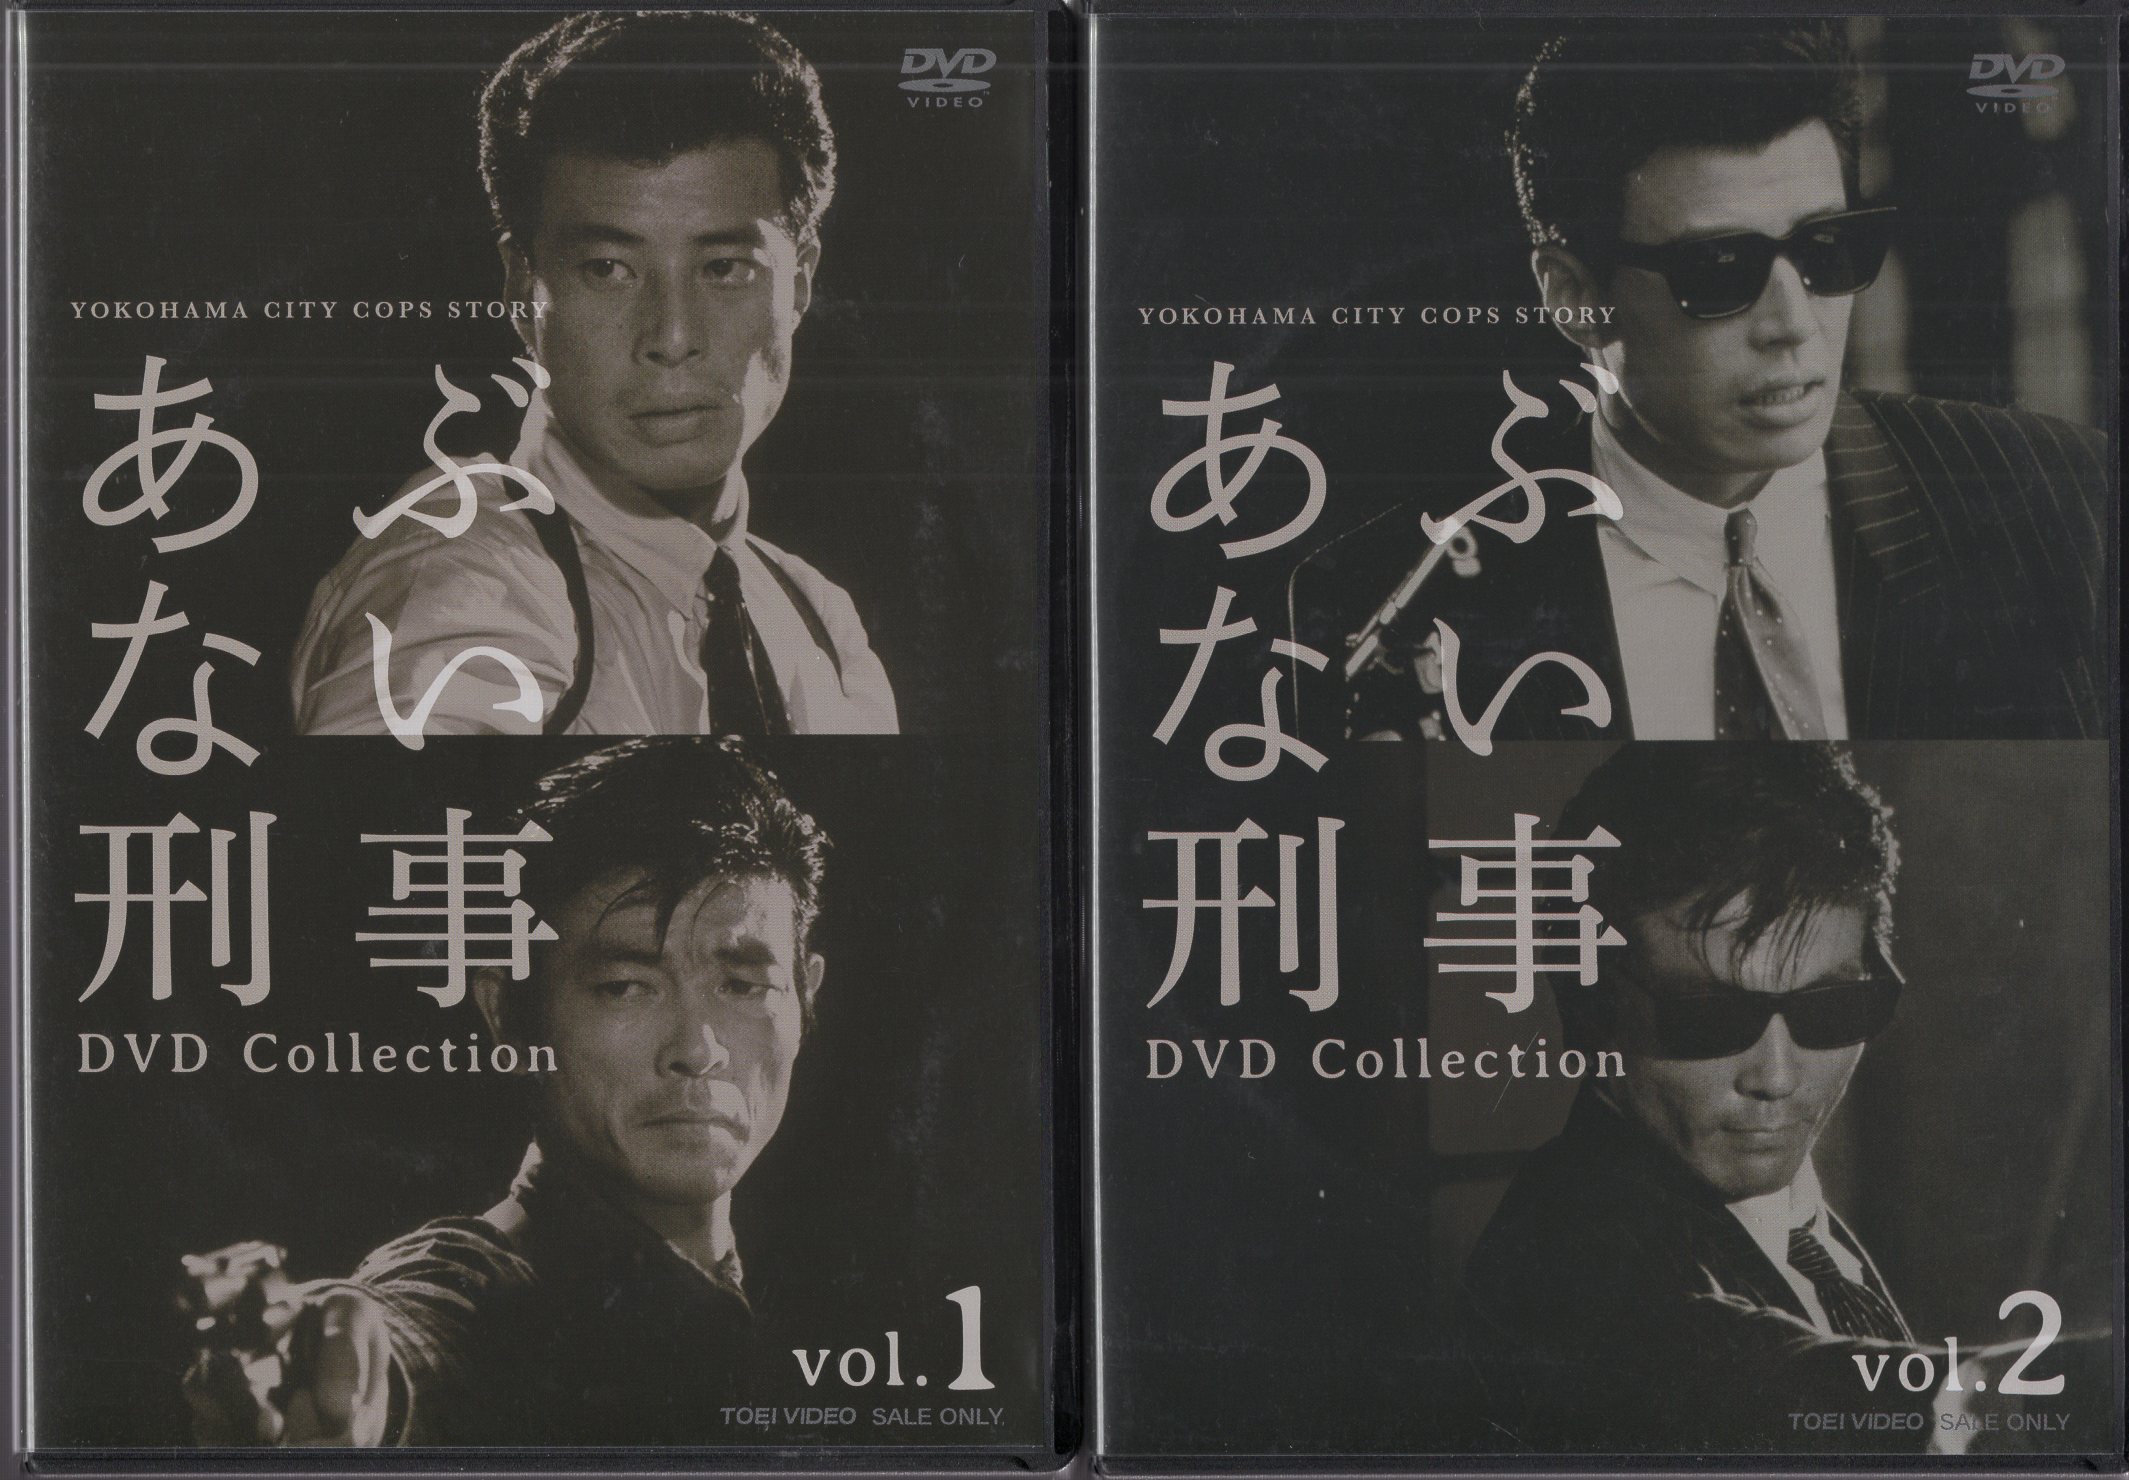 あぶない刑事 DVD collection VOL.2 - TVドラマ